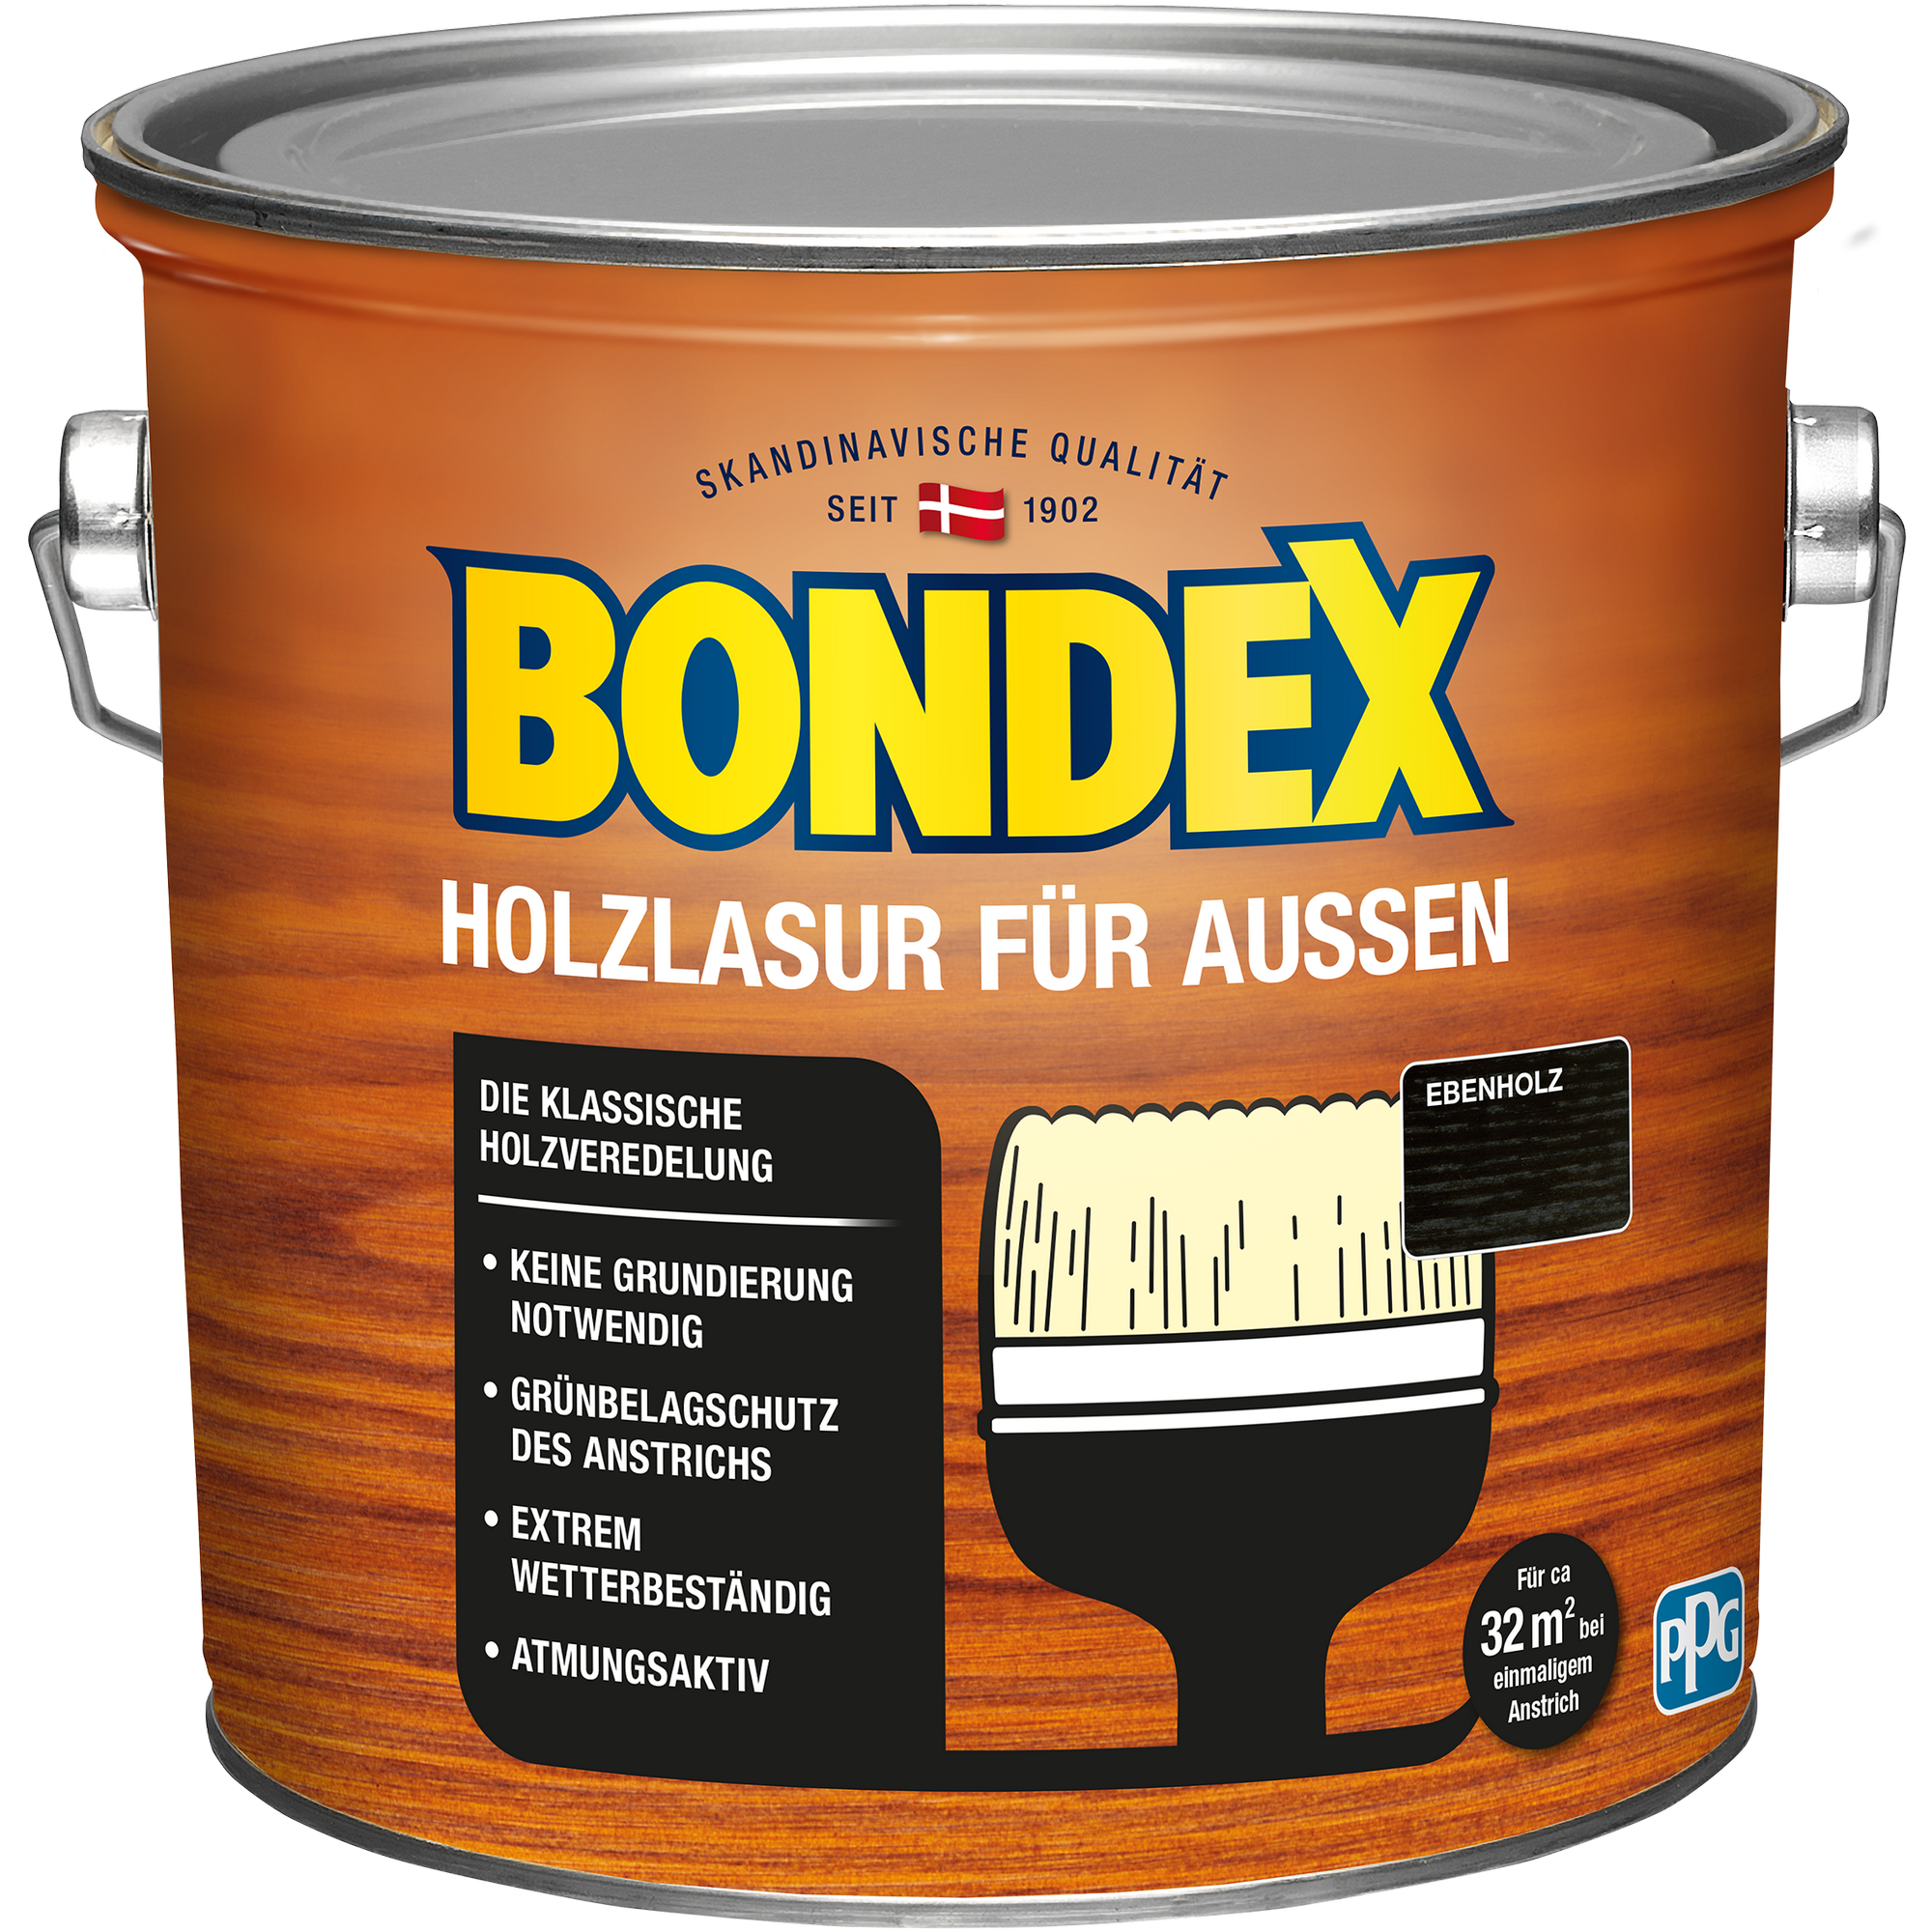 Bondex Holzlasur ebenholzfarben 2,5 l